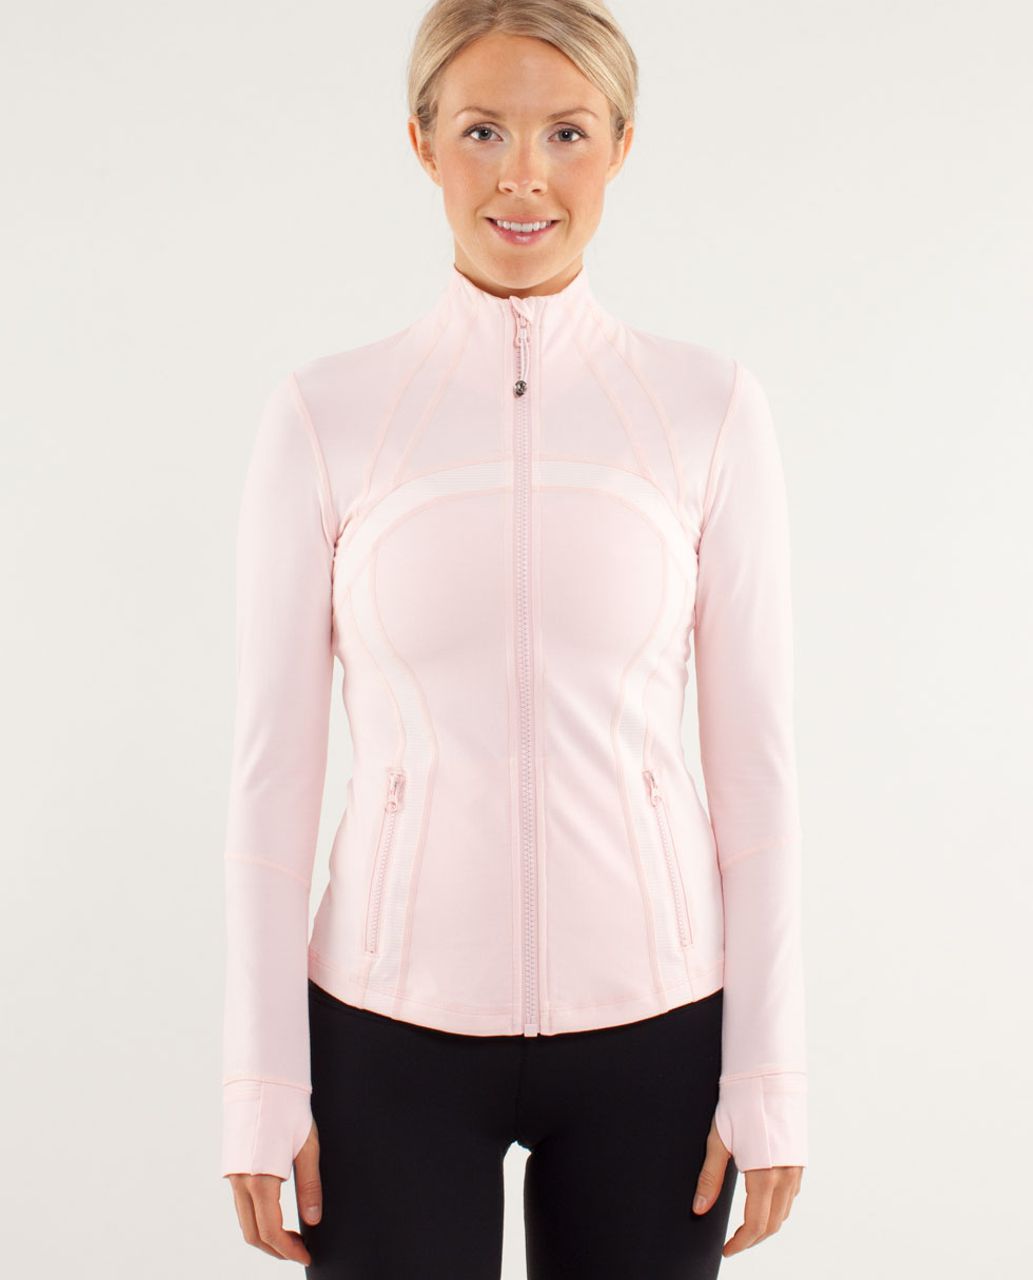 NWT Lululemon Define Jacket *Luon Pink Peony Size 8 - LW4AWKS PKPI